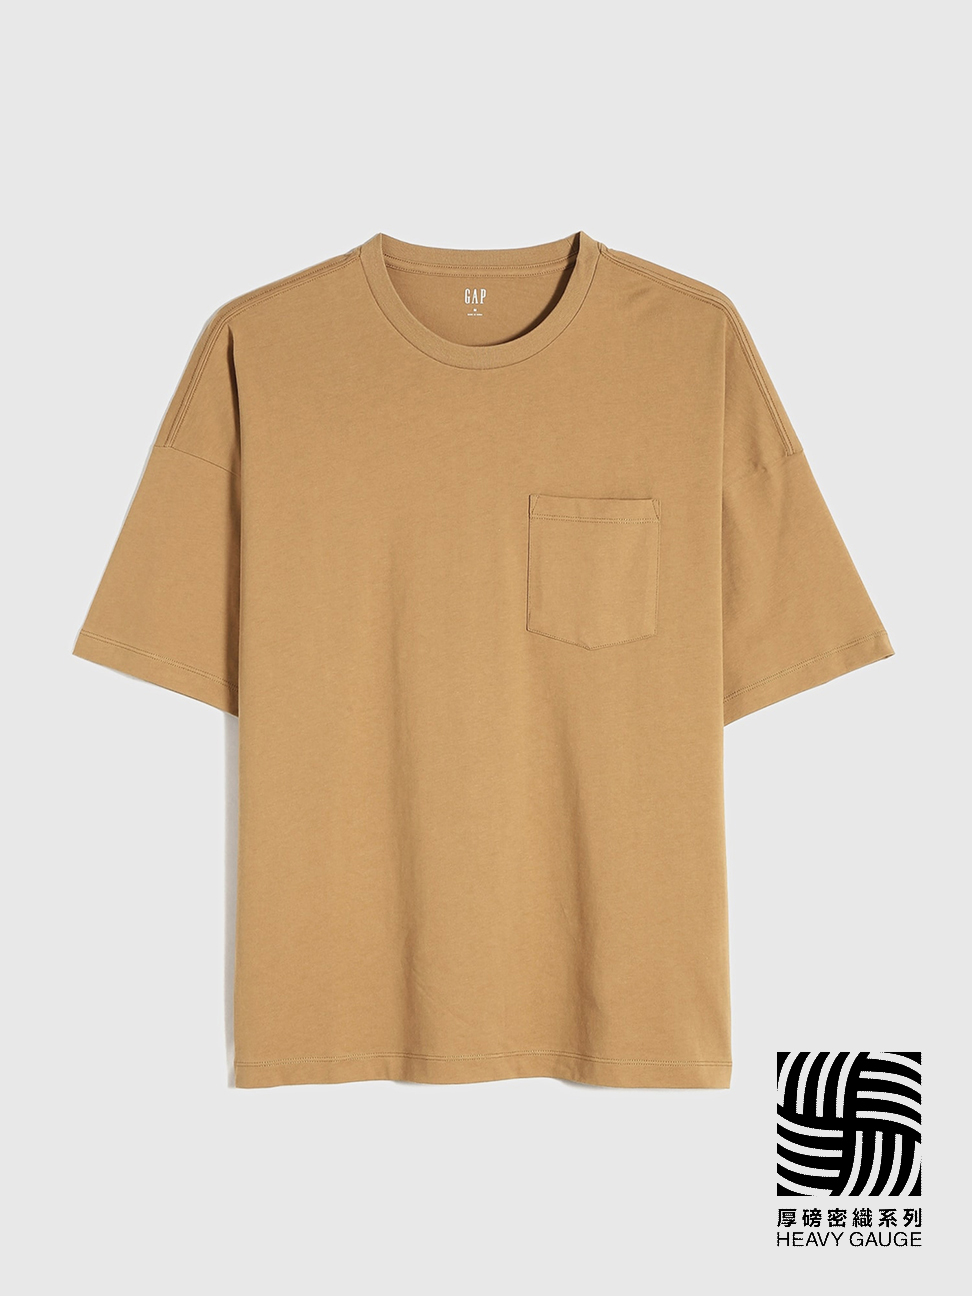 男裝|厚磅密織 親膚系列 純棉基本款短袖T恤